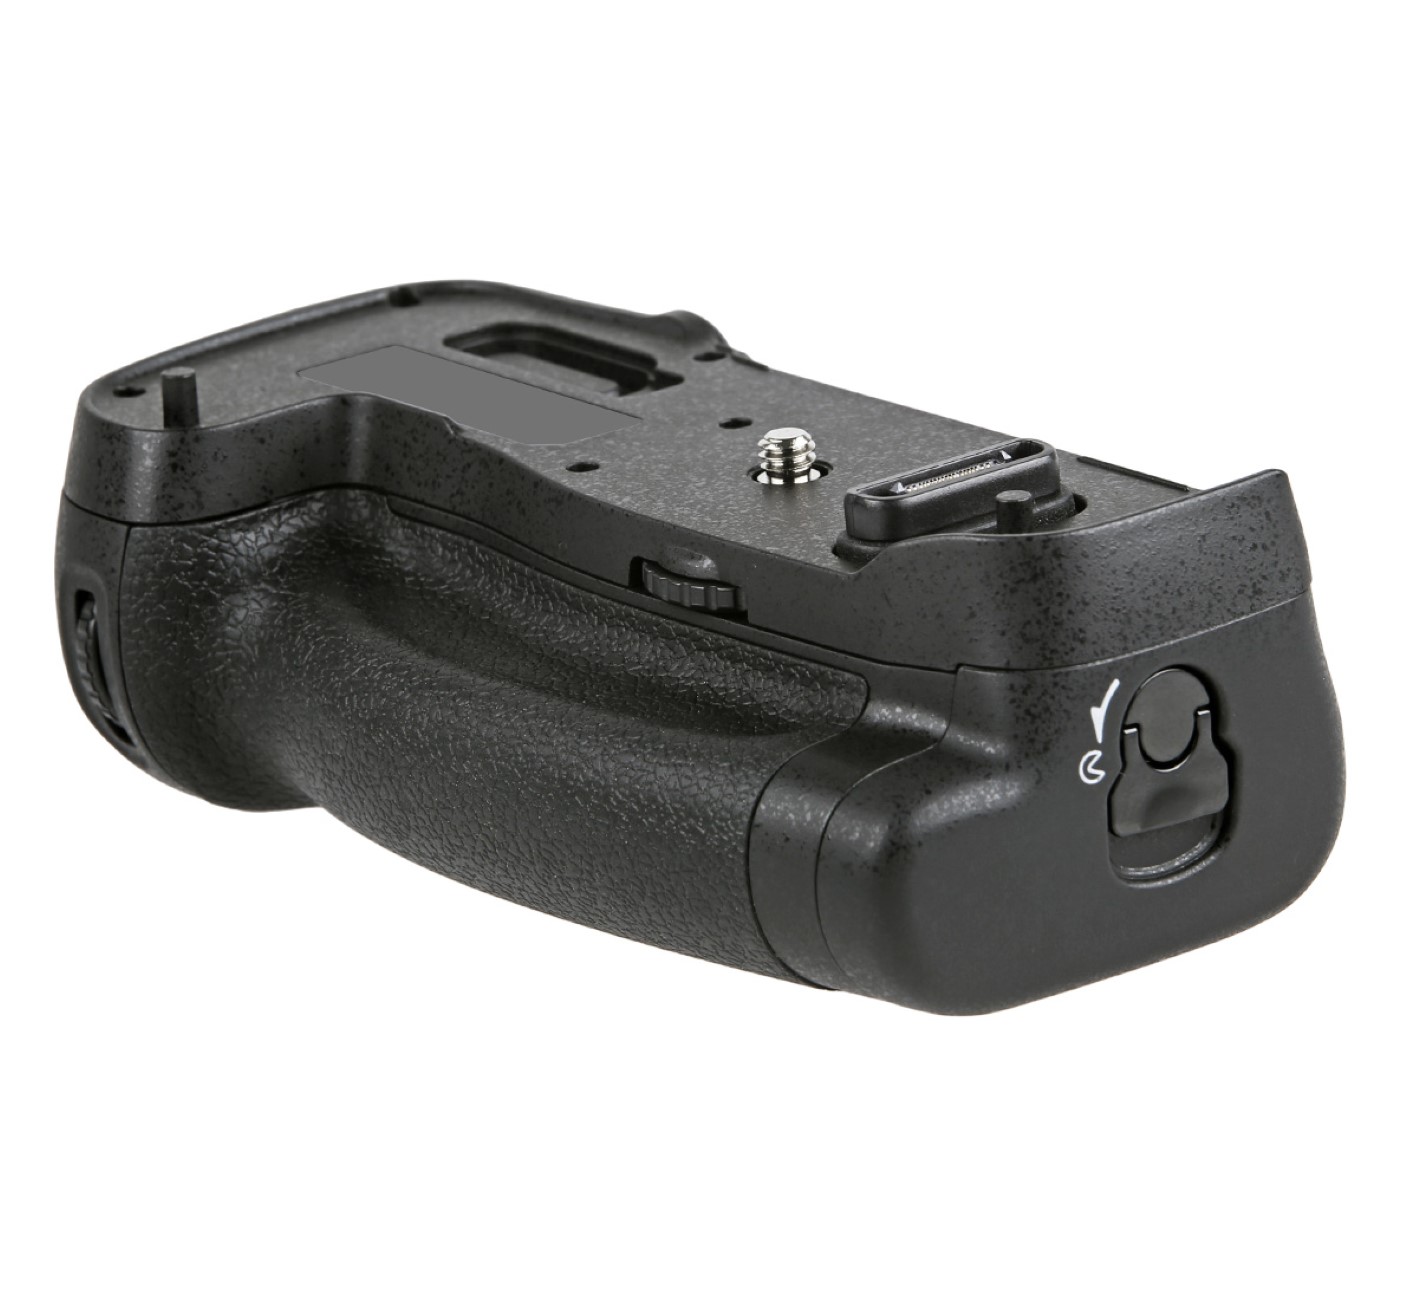 ayex Batteriegriff Set für Nikon D500 wie MB-D17 + 2x EN-EL15B Akku + 1x USB Dual Ladegerät